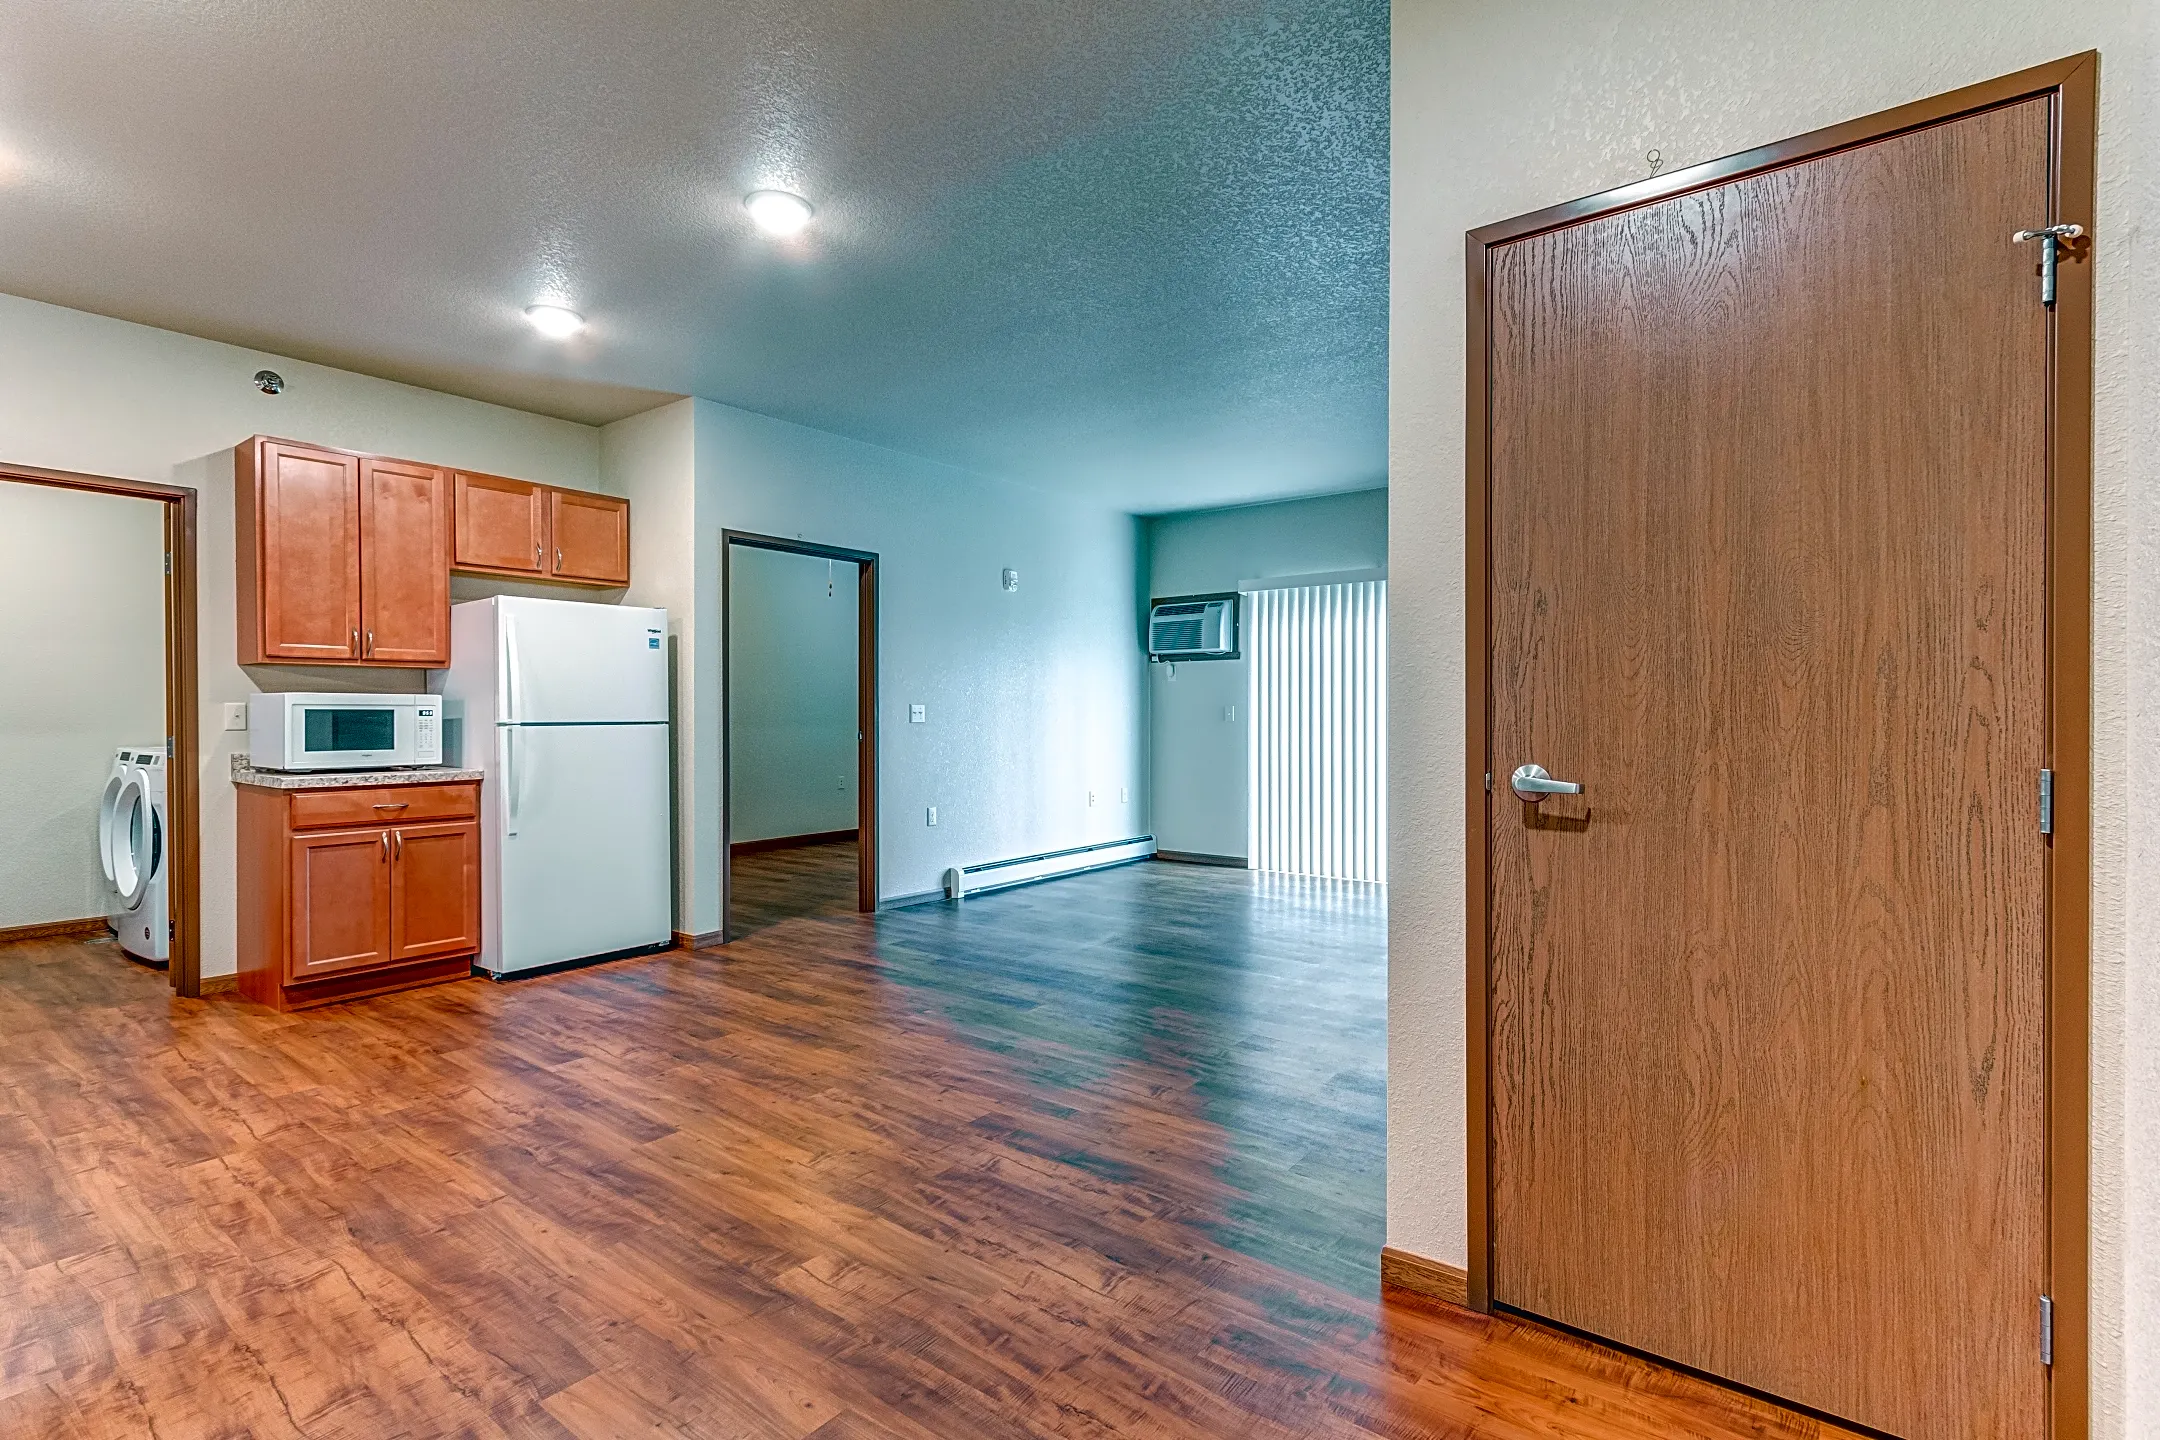 Dining Room - Homefield Senior Living Apartments - Fargo, ND